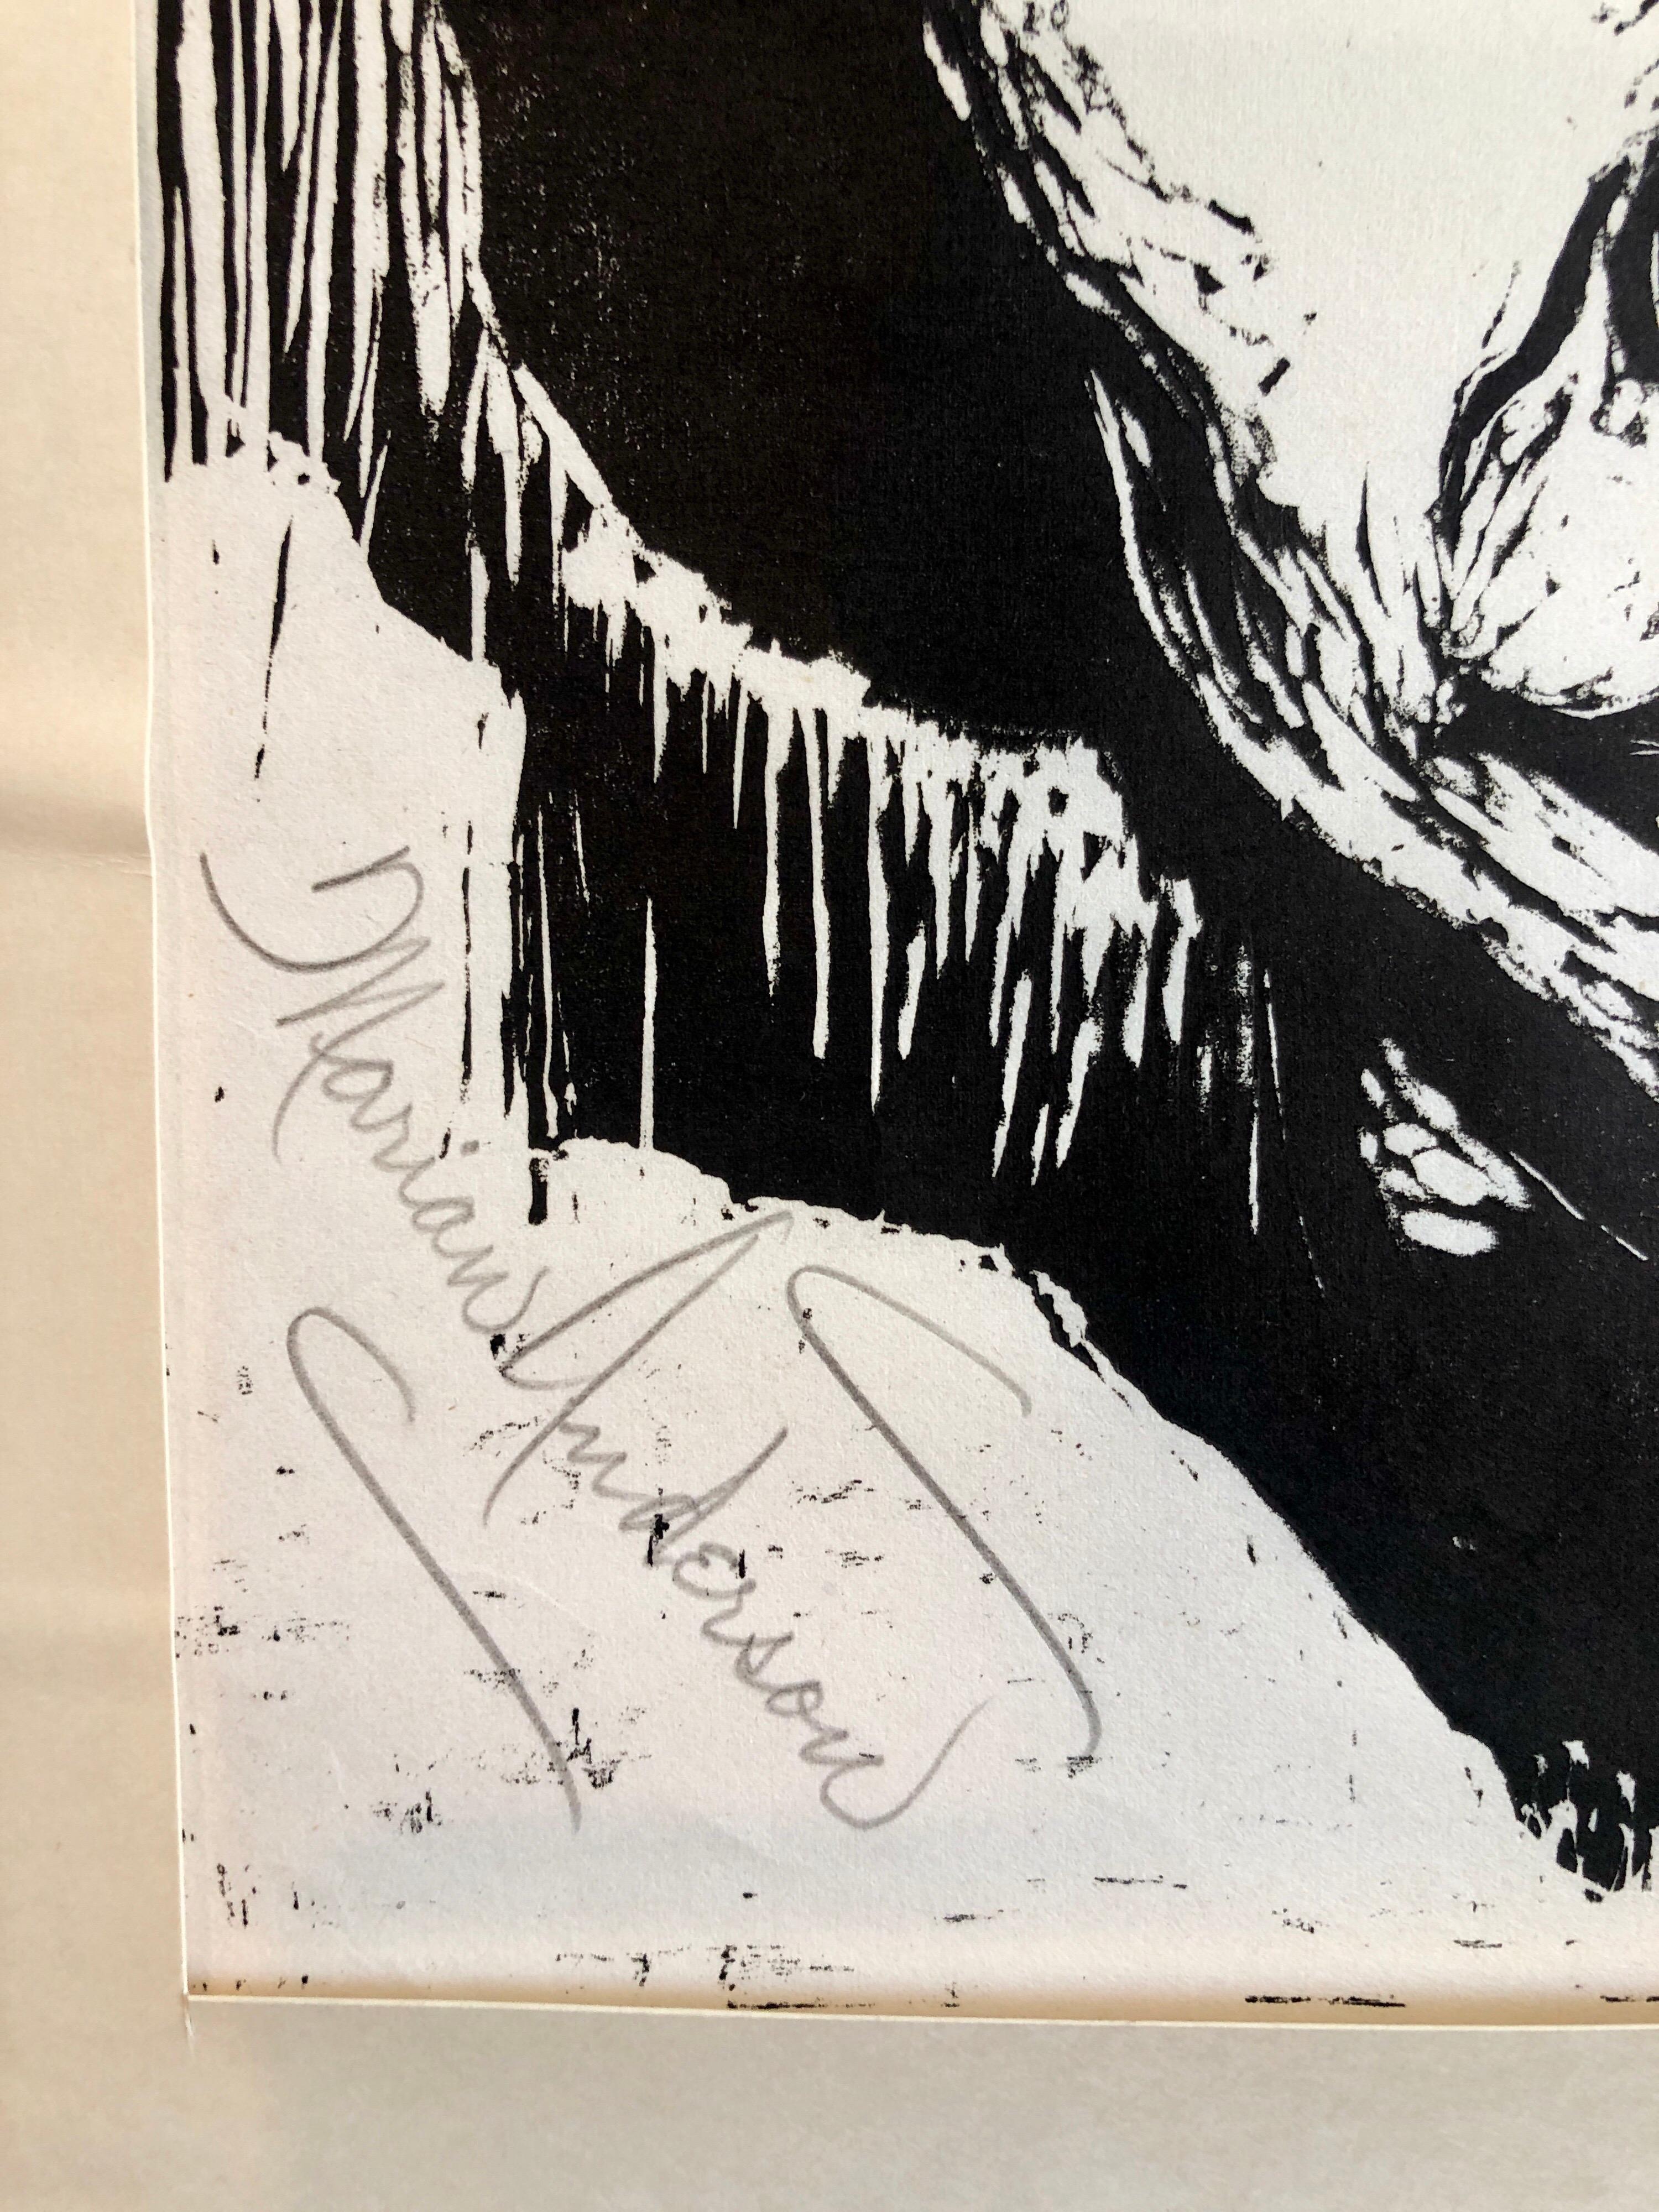 Steinhardt Holzschnitt Marian Anderson Signierte afroamerikanische, israelische Bezalel-Kunst – Print von Jacob Steinhardt